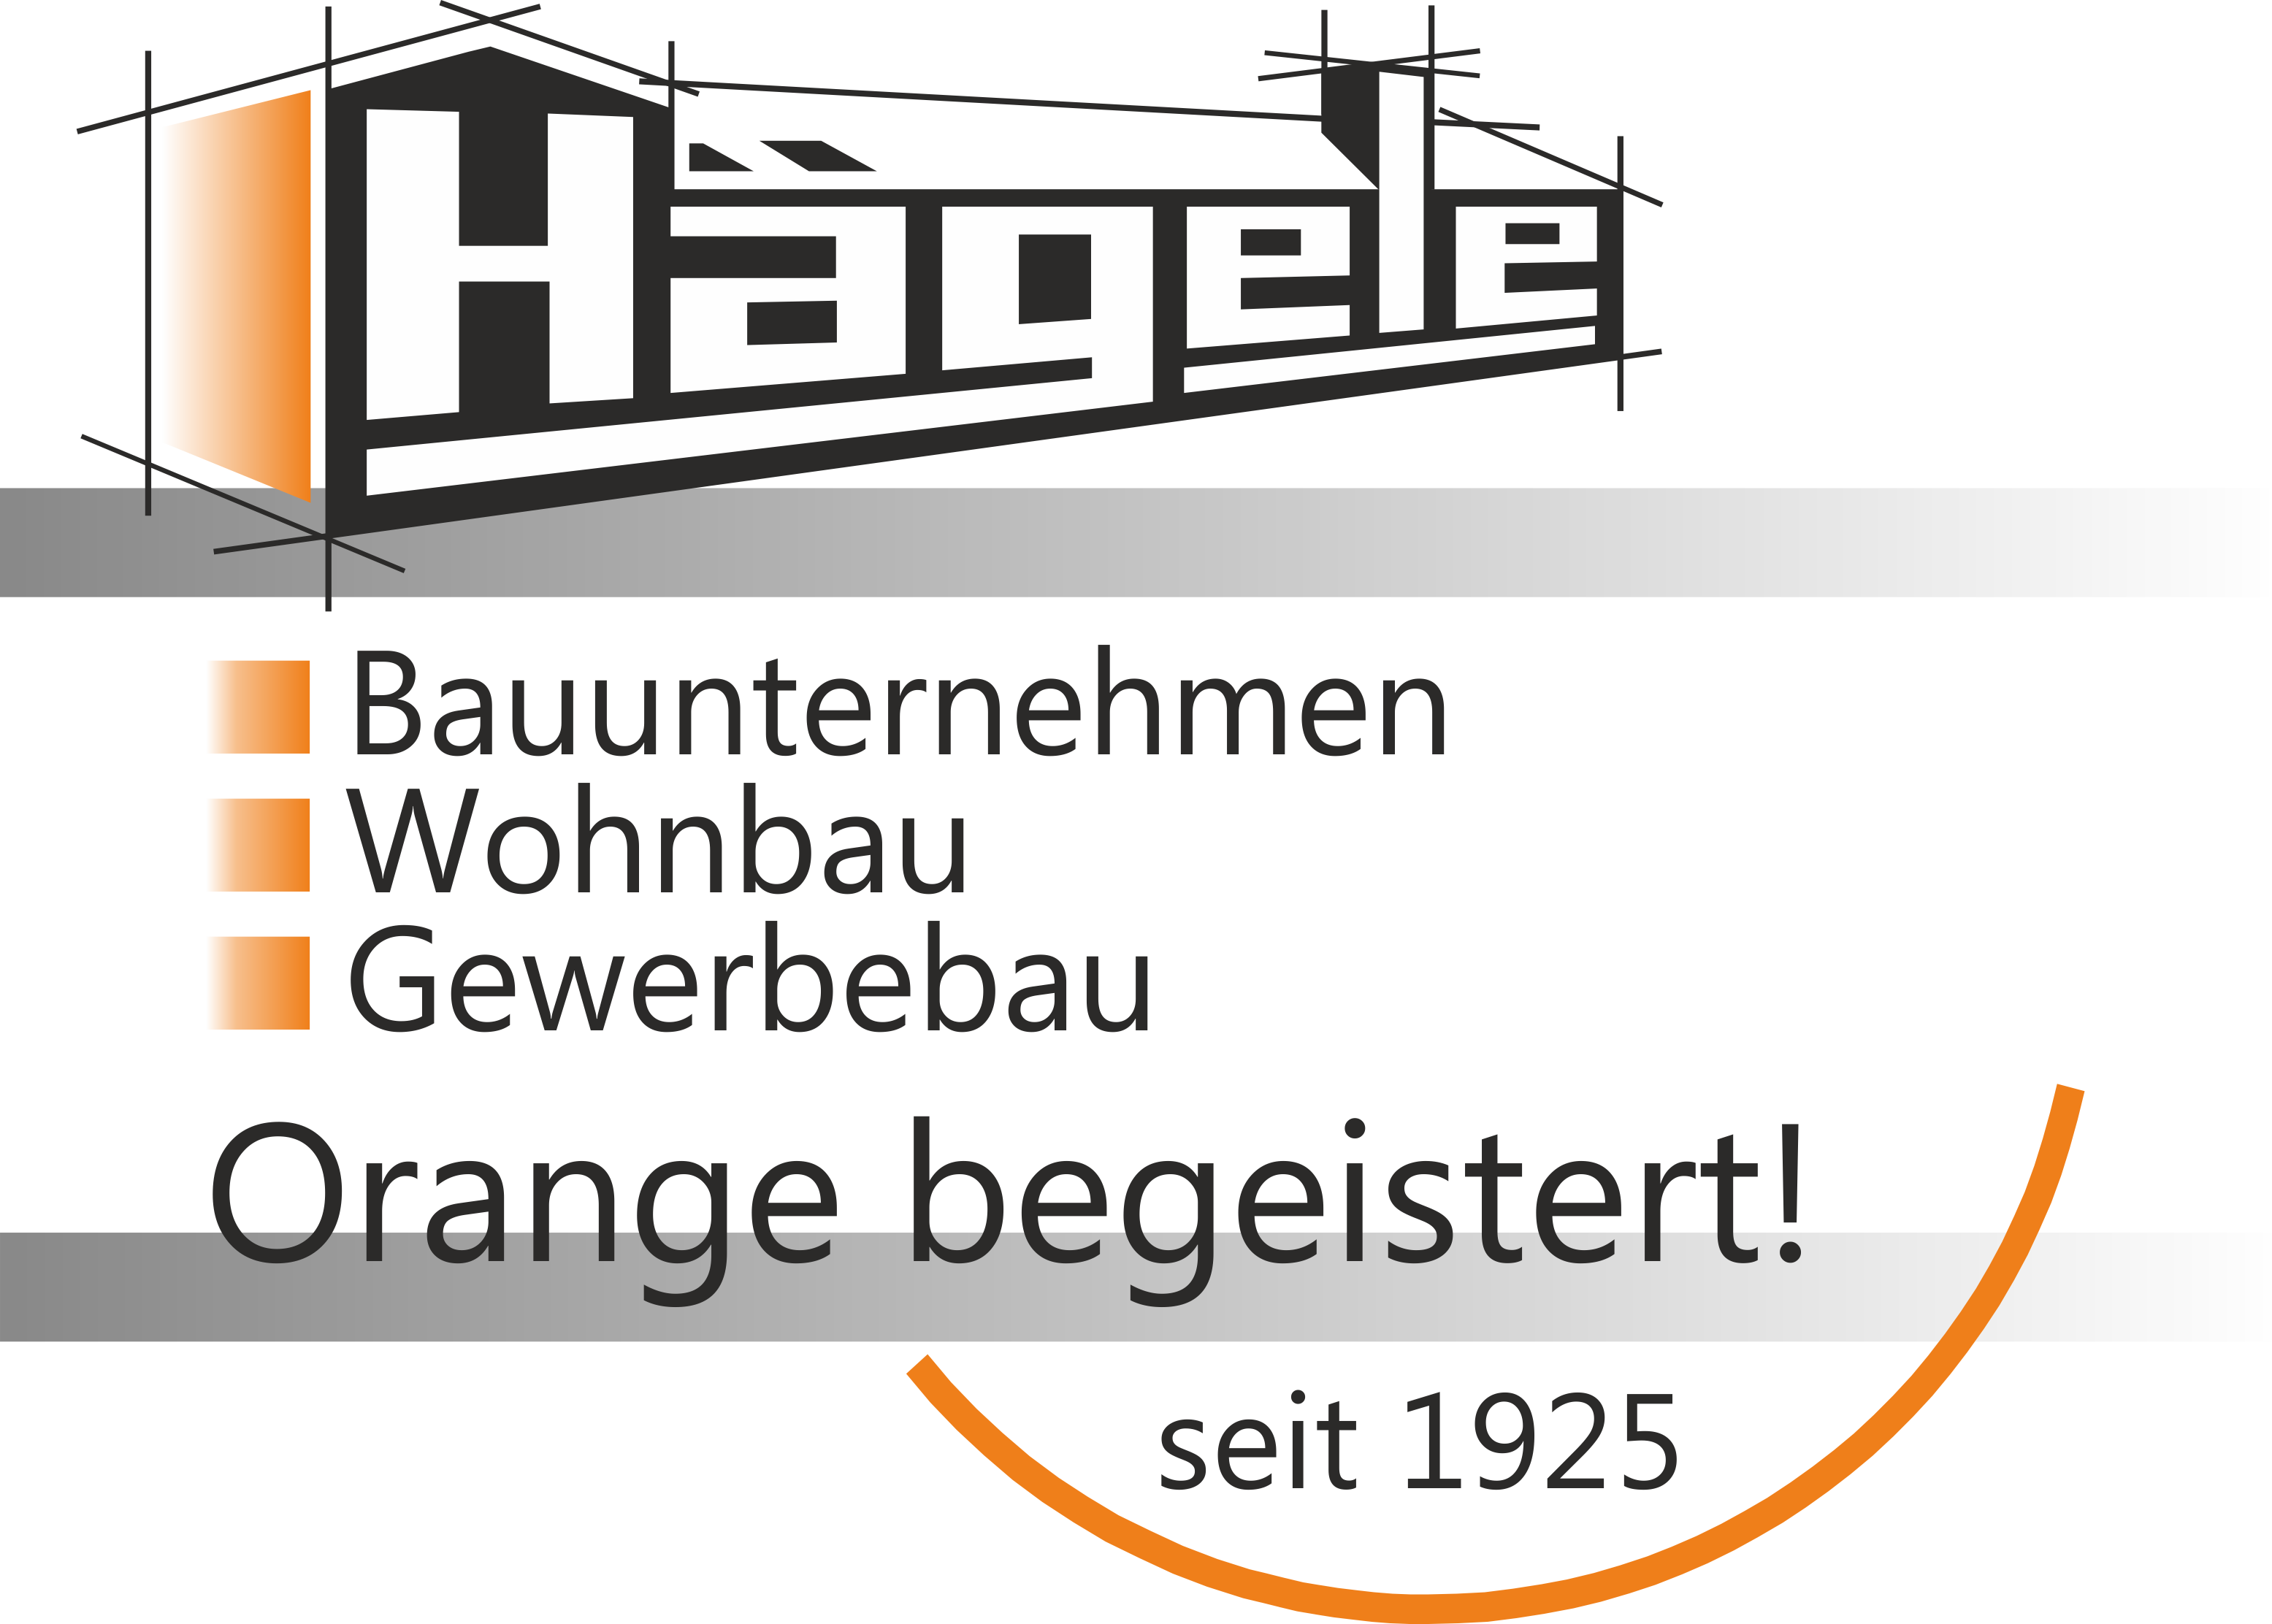 http://www.bauunternehmen-haegele.de